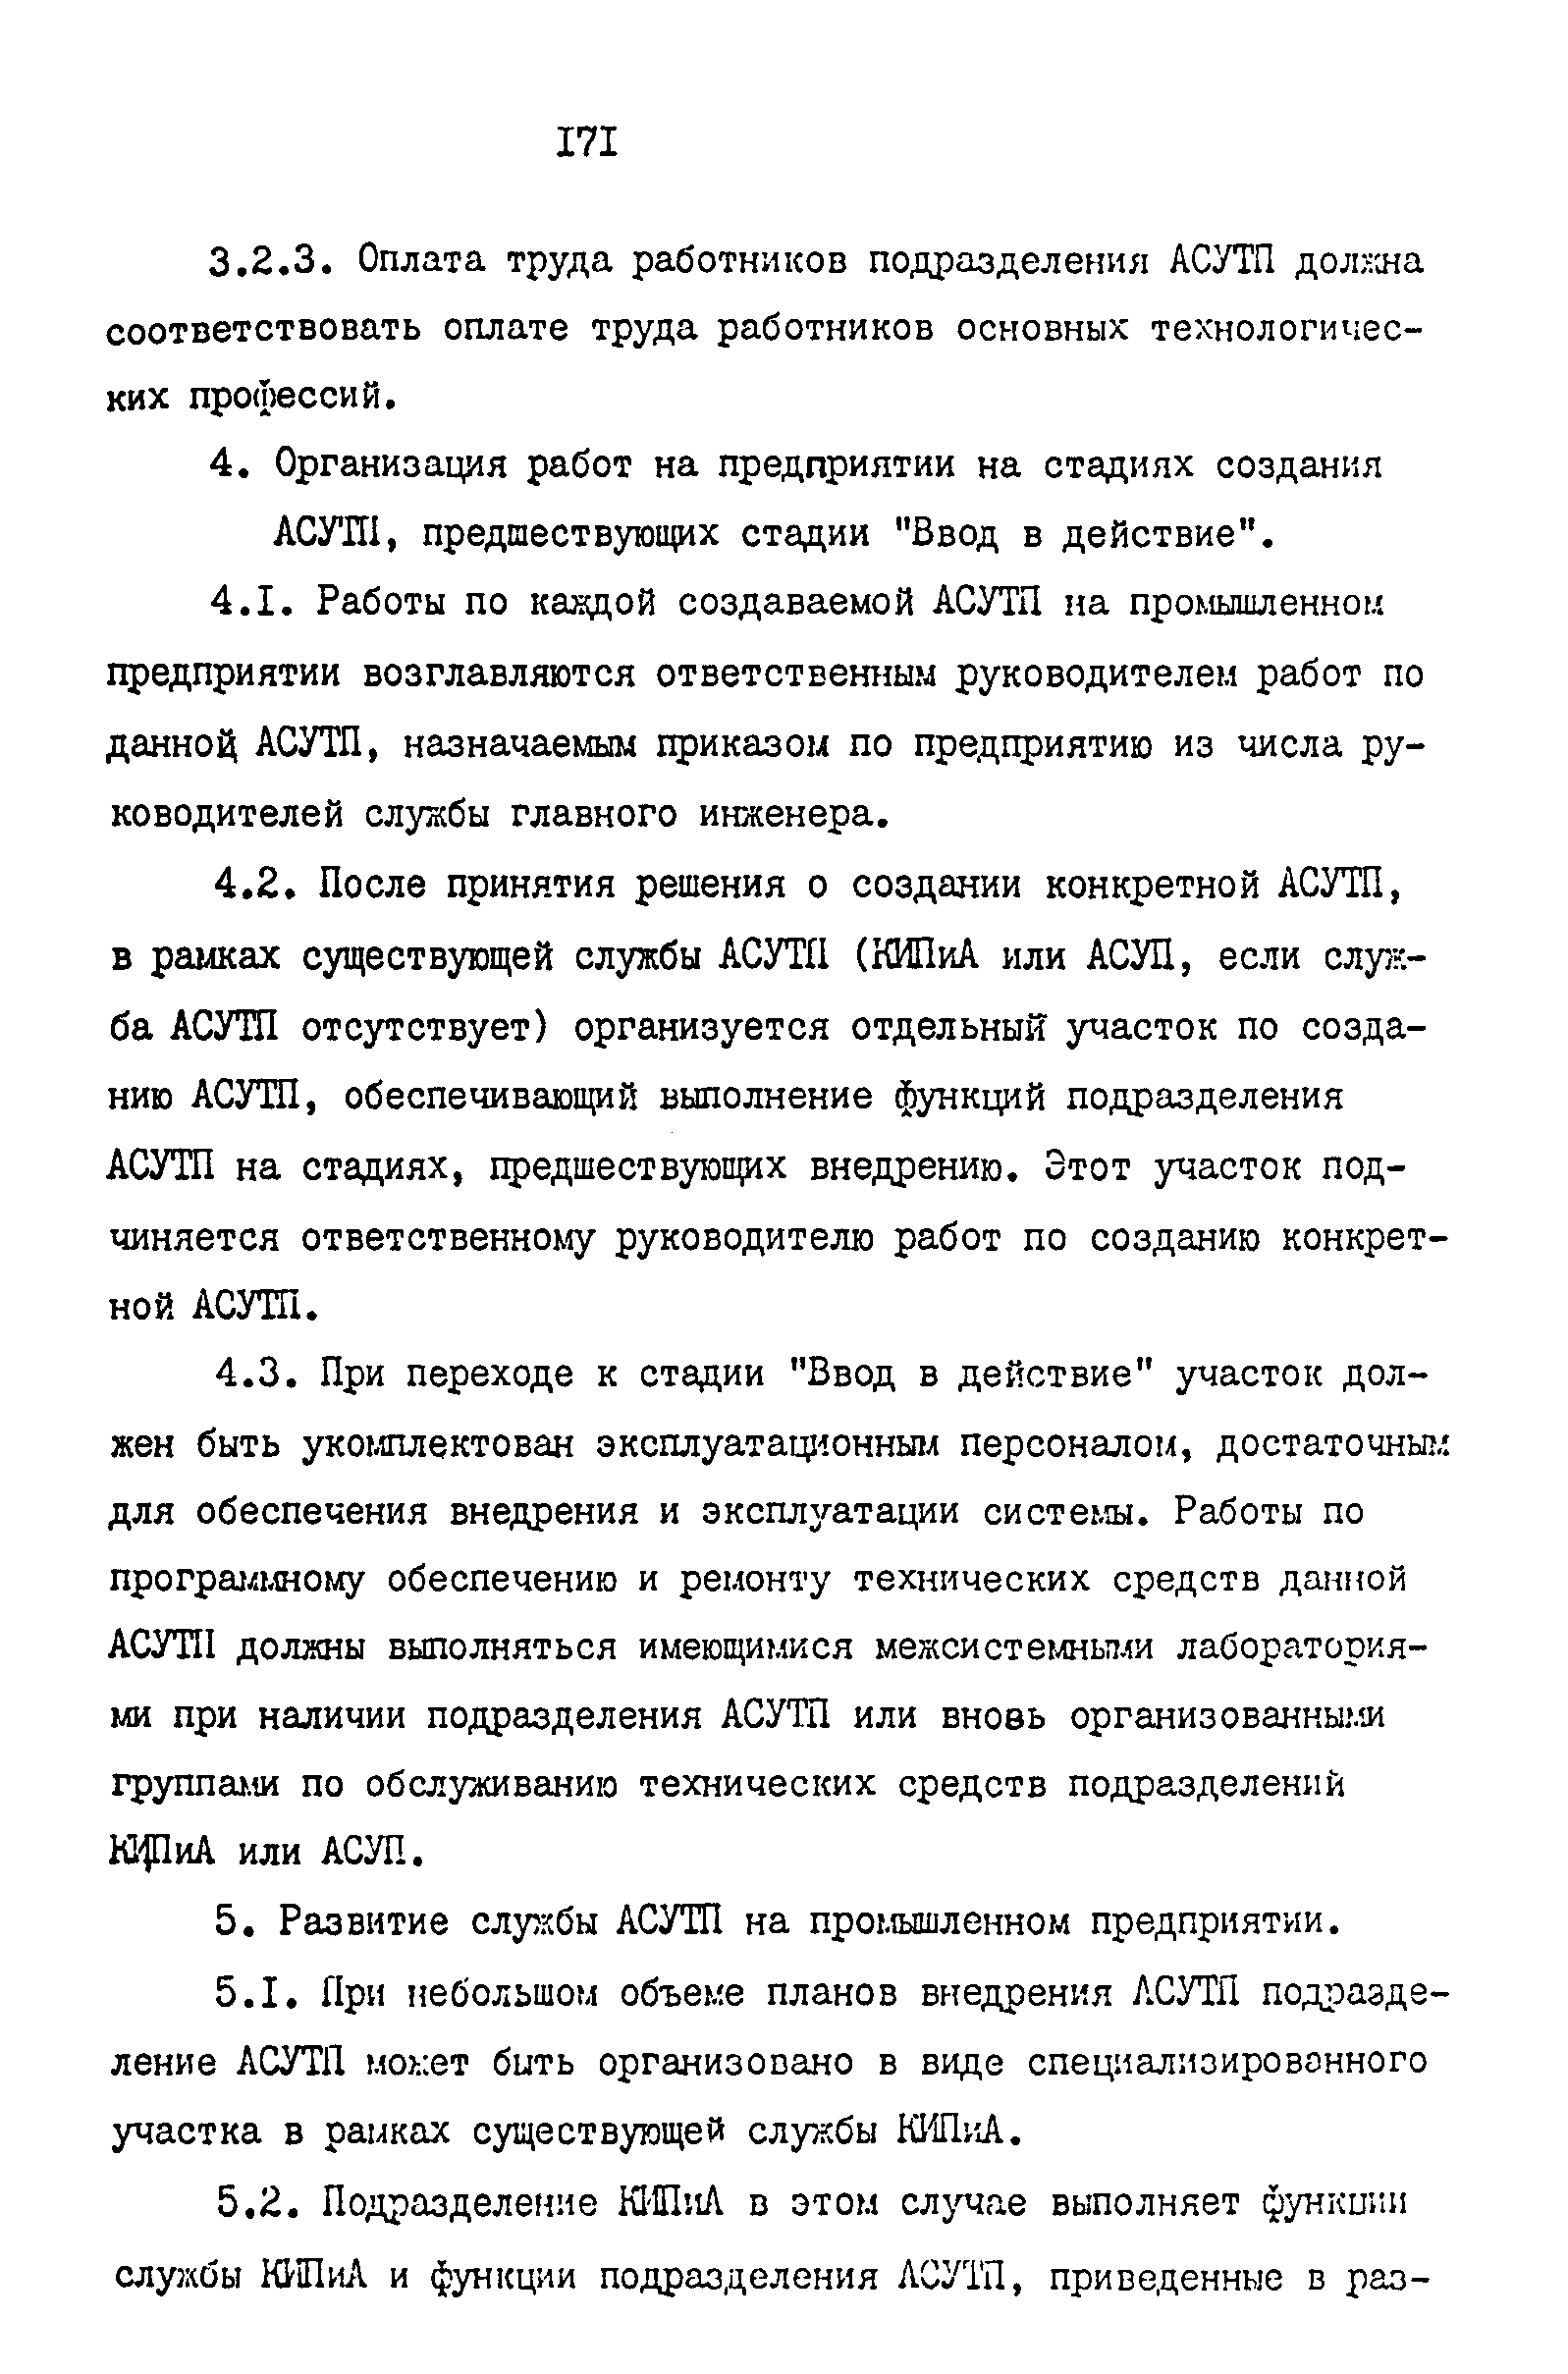 ОРММ-3 АСУТП